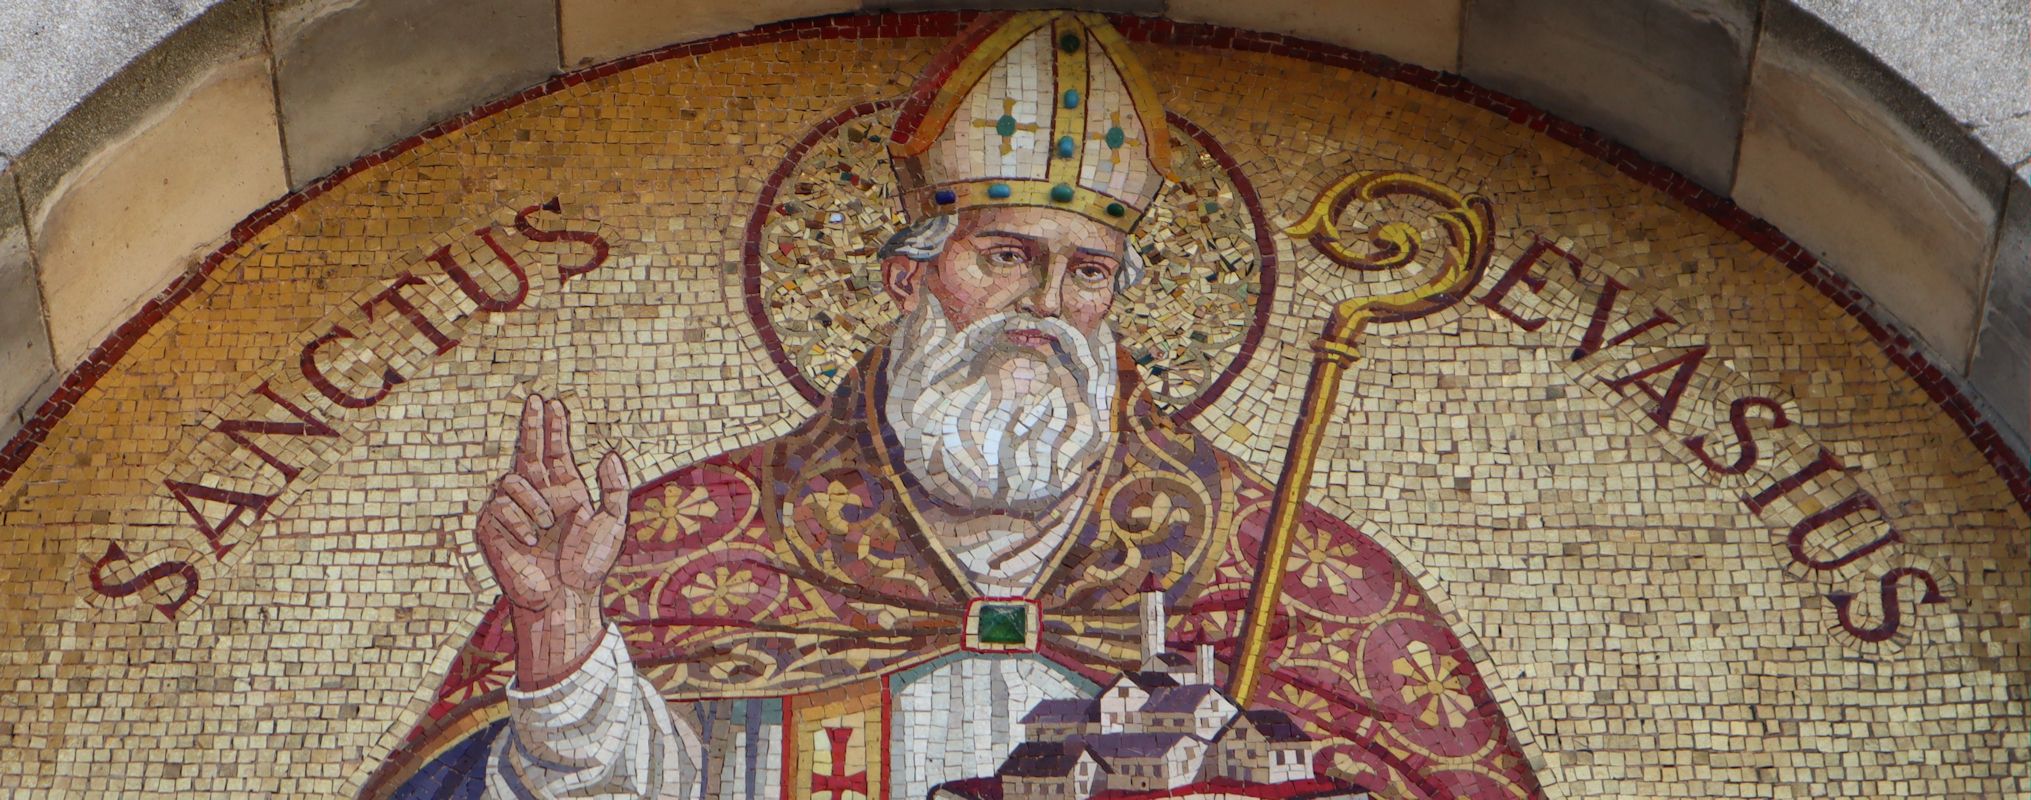 Mosaik über der Tür der Pfarrkirche in Borgo Vercelli